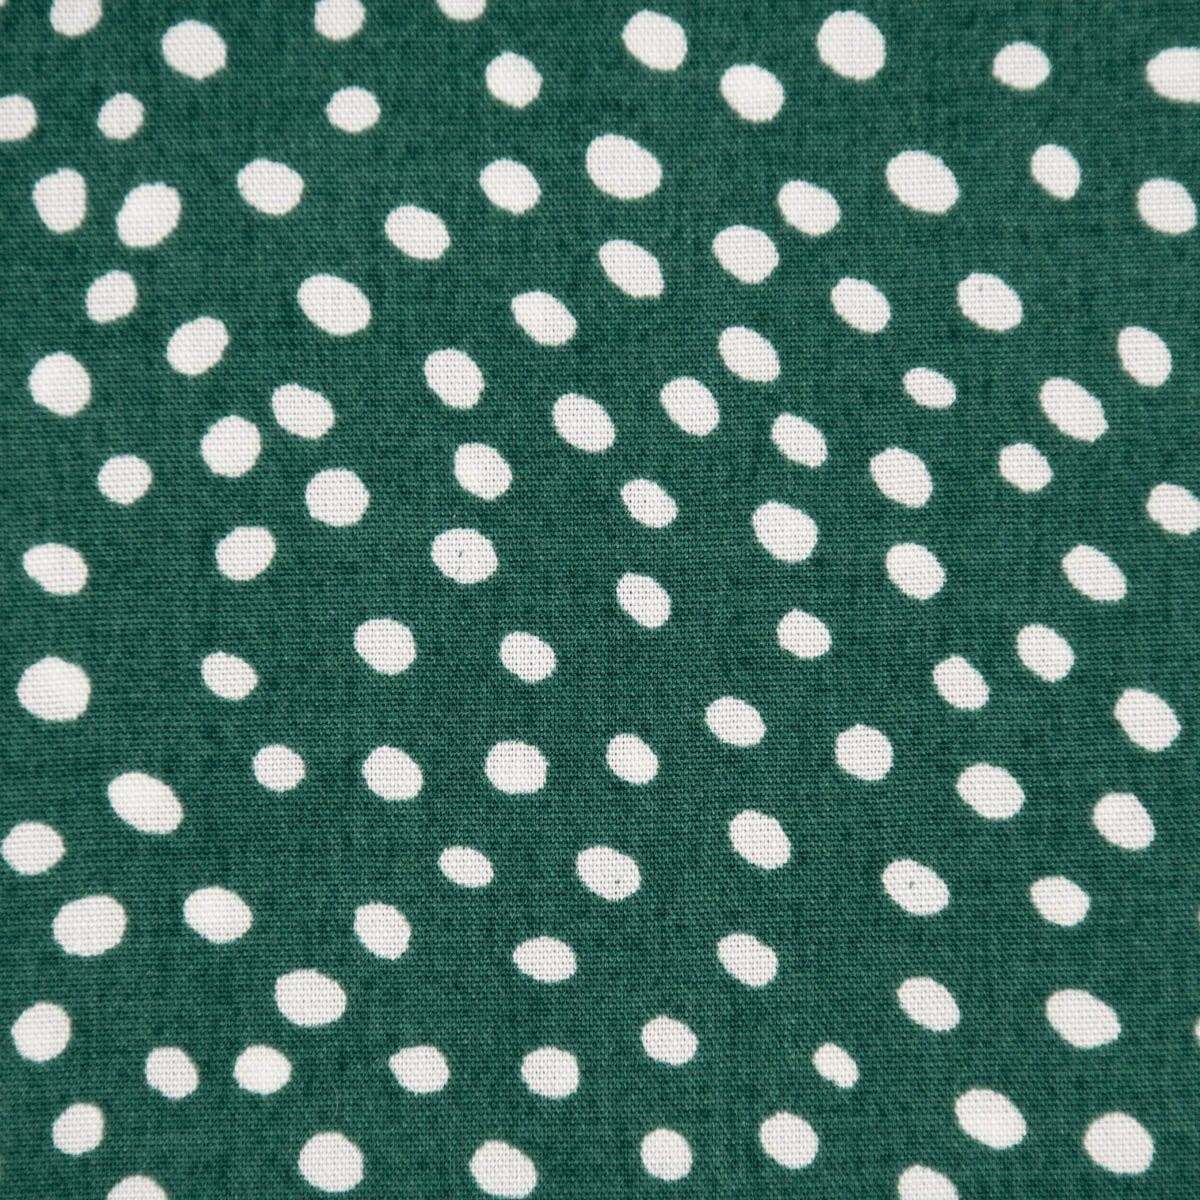 SCHÖNER LEBEN. Stoff »Bekleidungsstoff Radiance Viskose Punkte dunkelgrün  weiß 1,45m Breite« online kaufen | OTTO